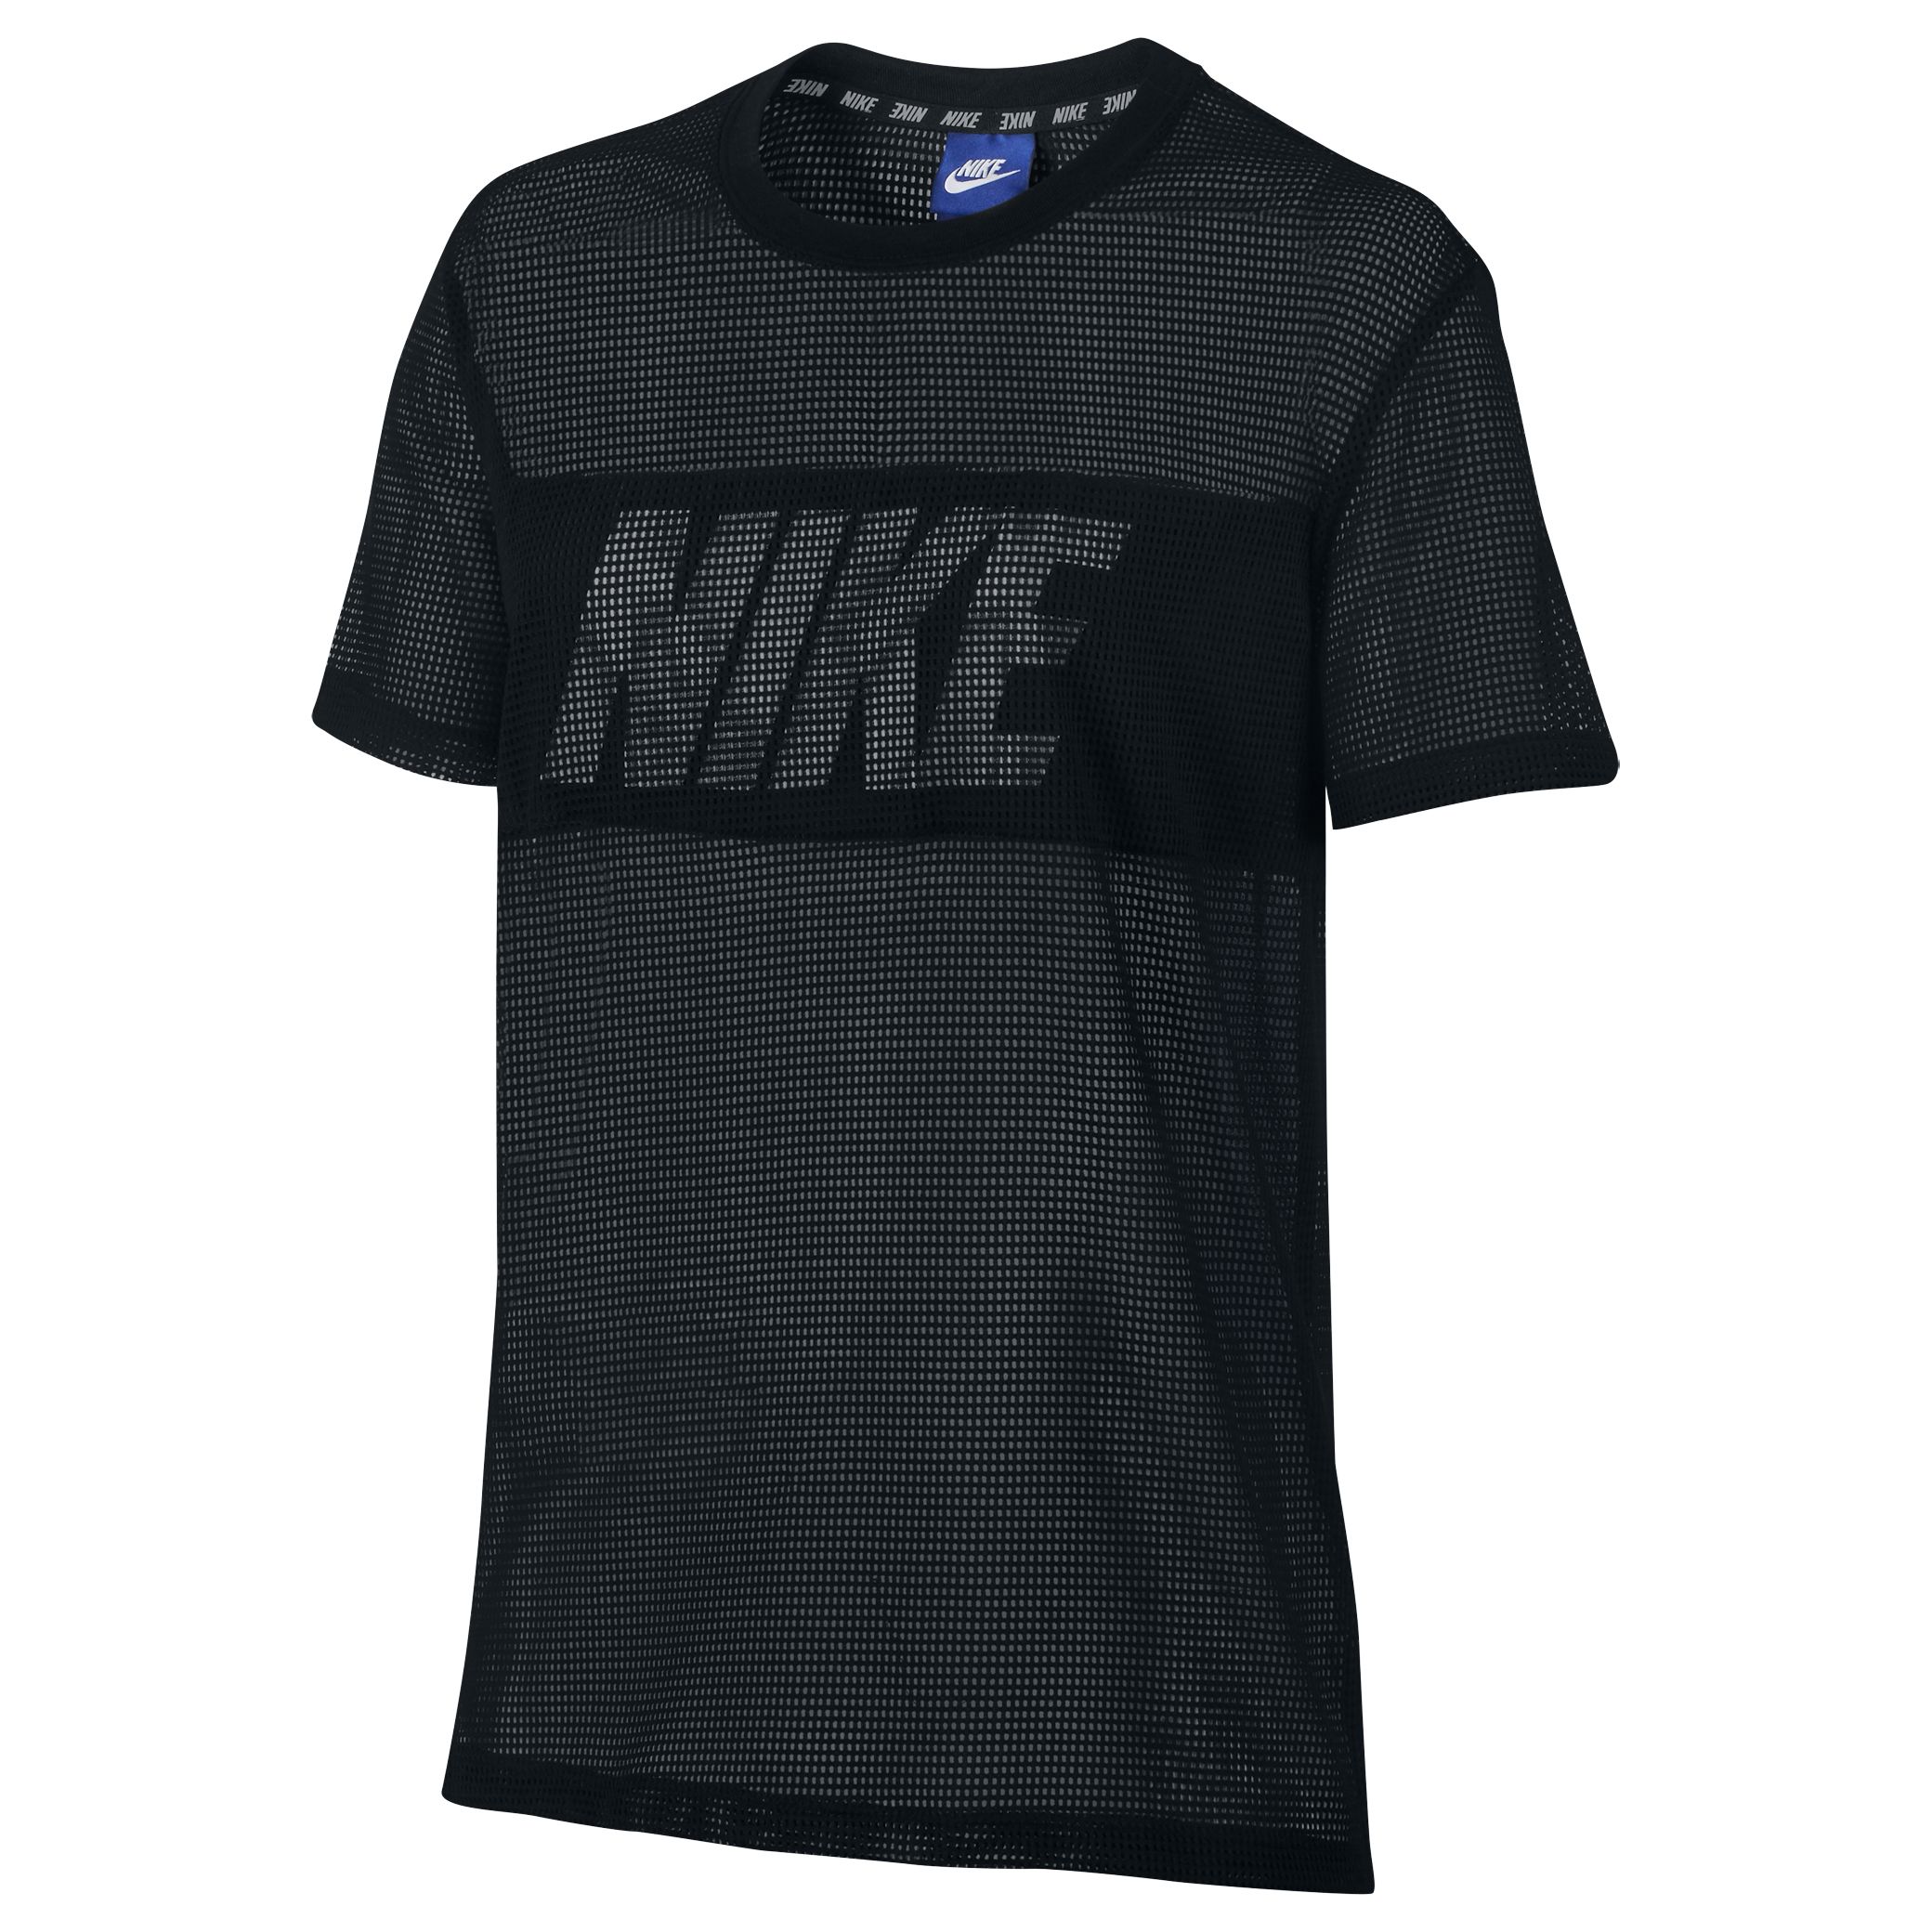 Nike Sportswear Advance 15 Top, Black/White